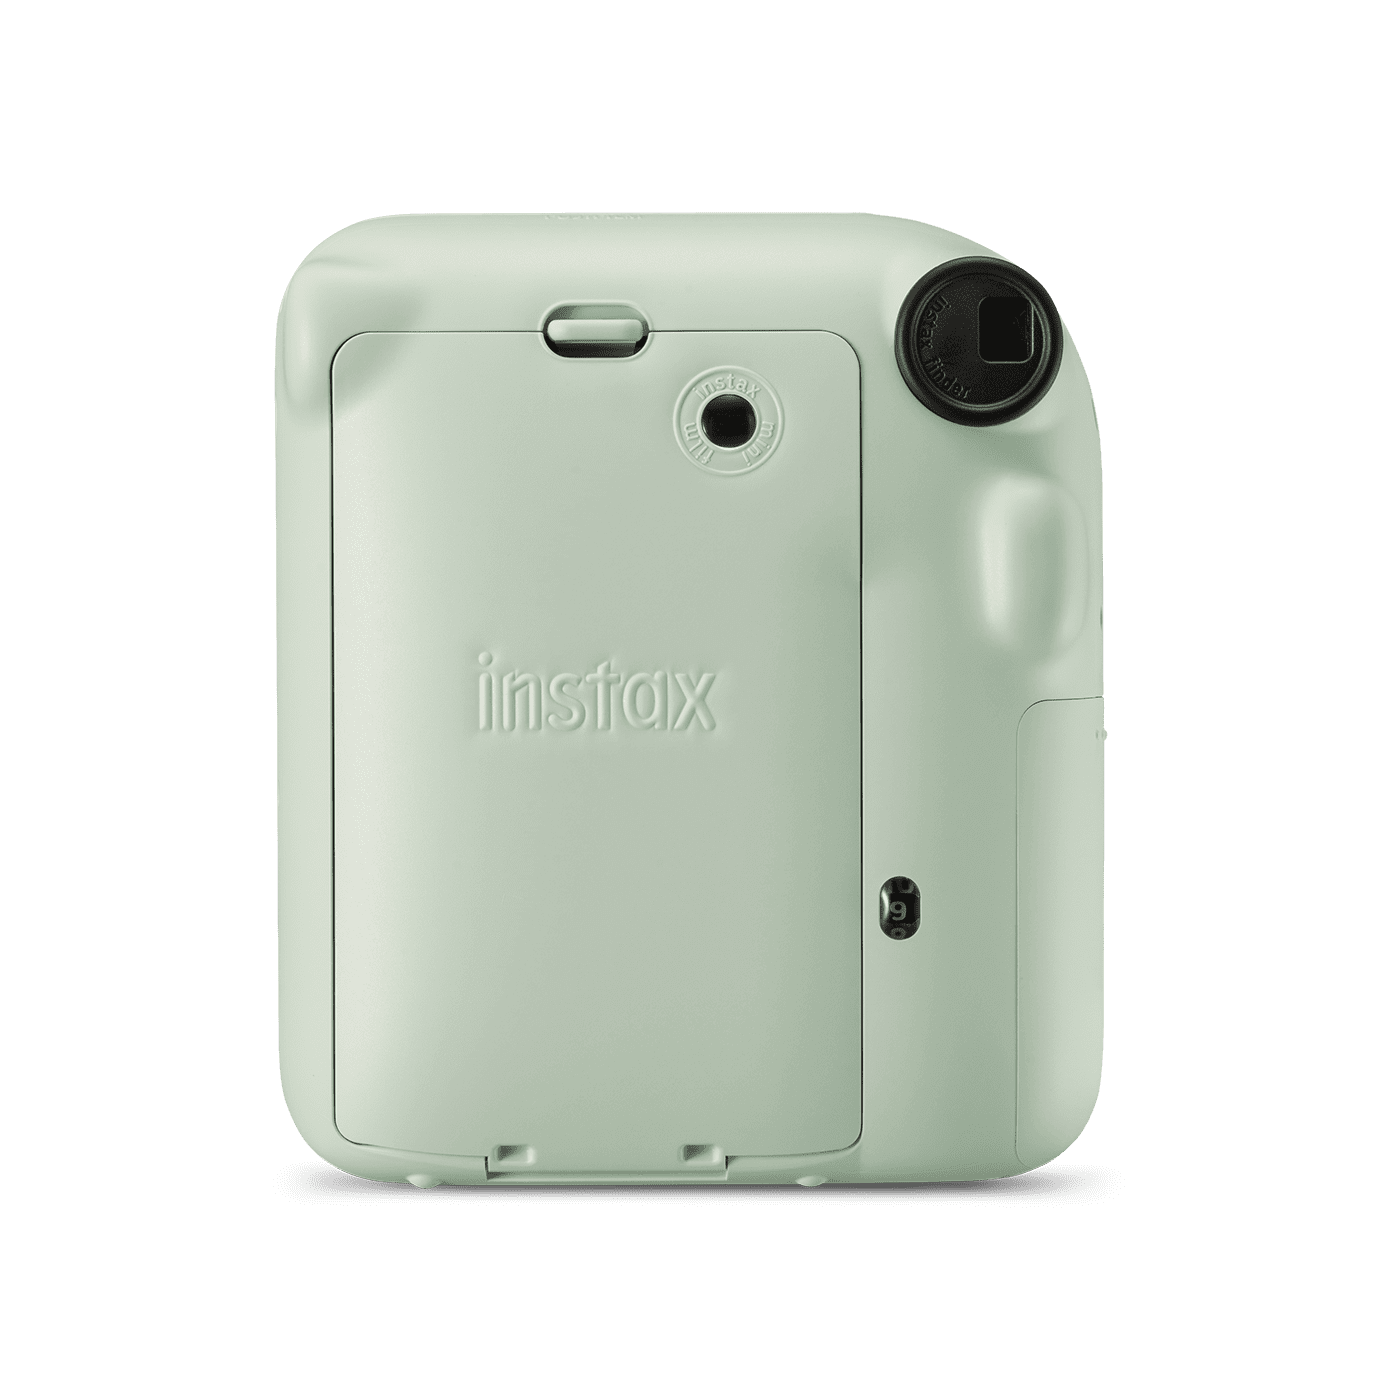 Fujifilm instax mini 12 Instant Film Camera (Parallel Import)